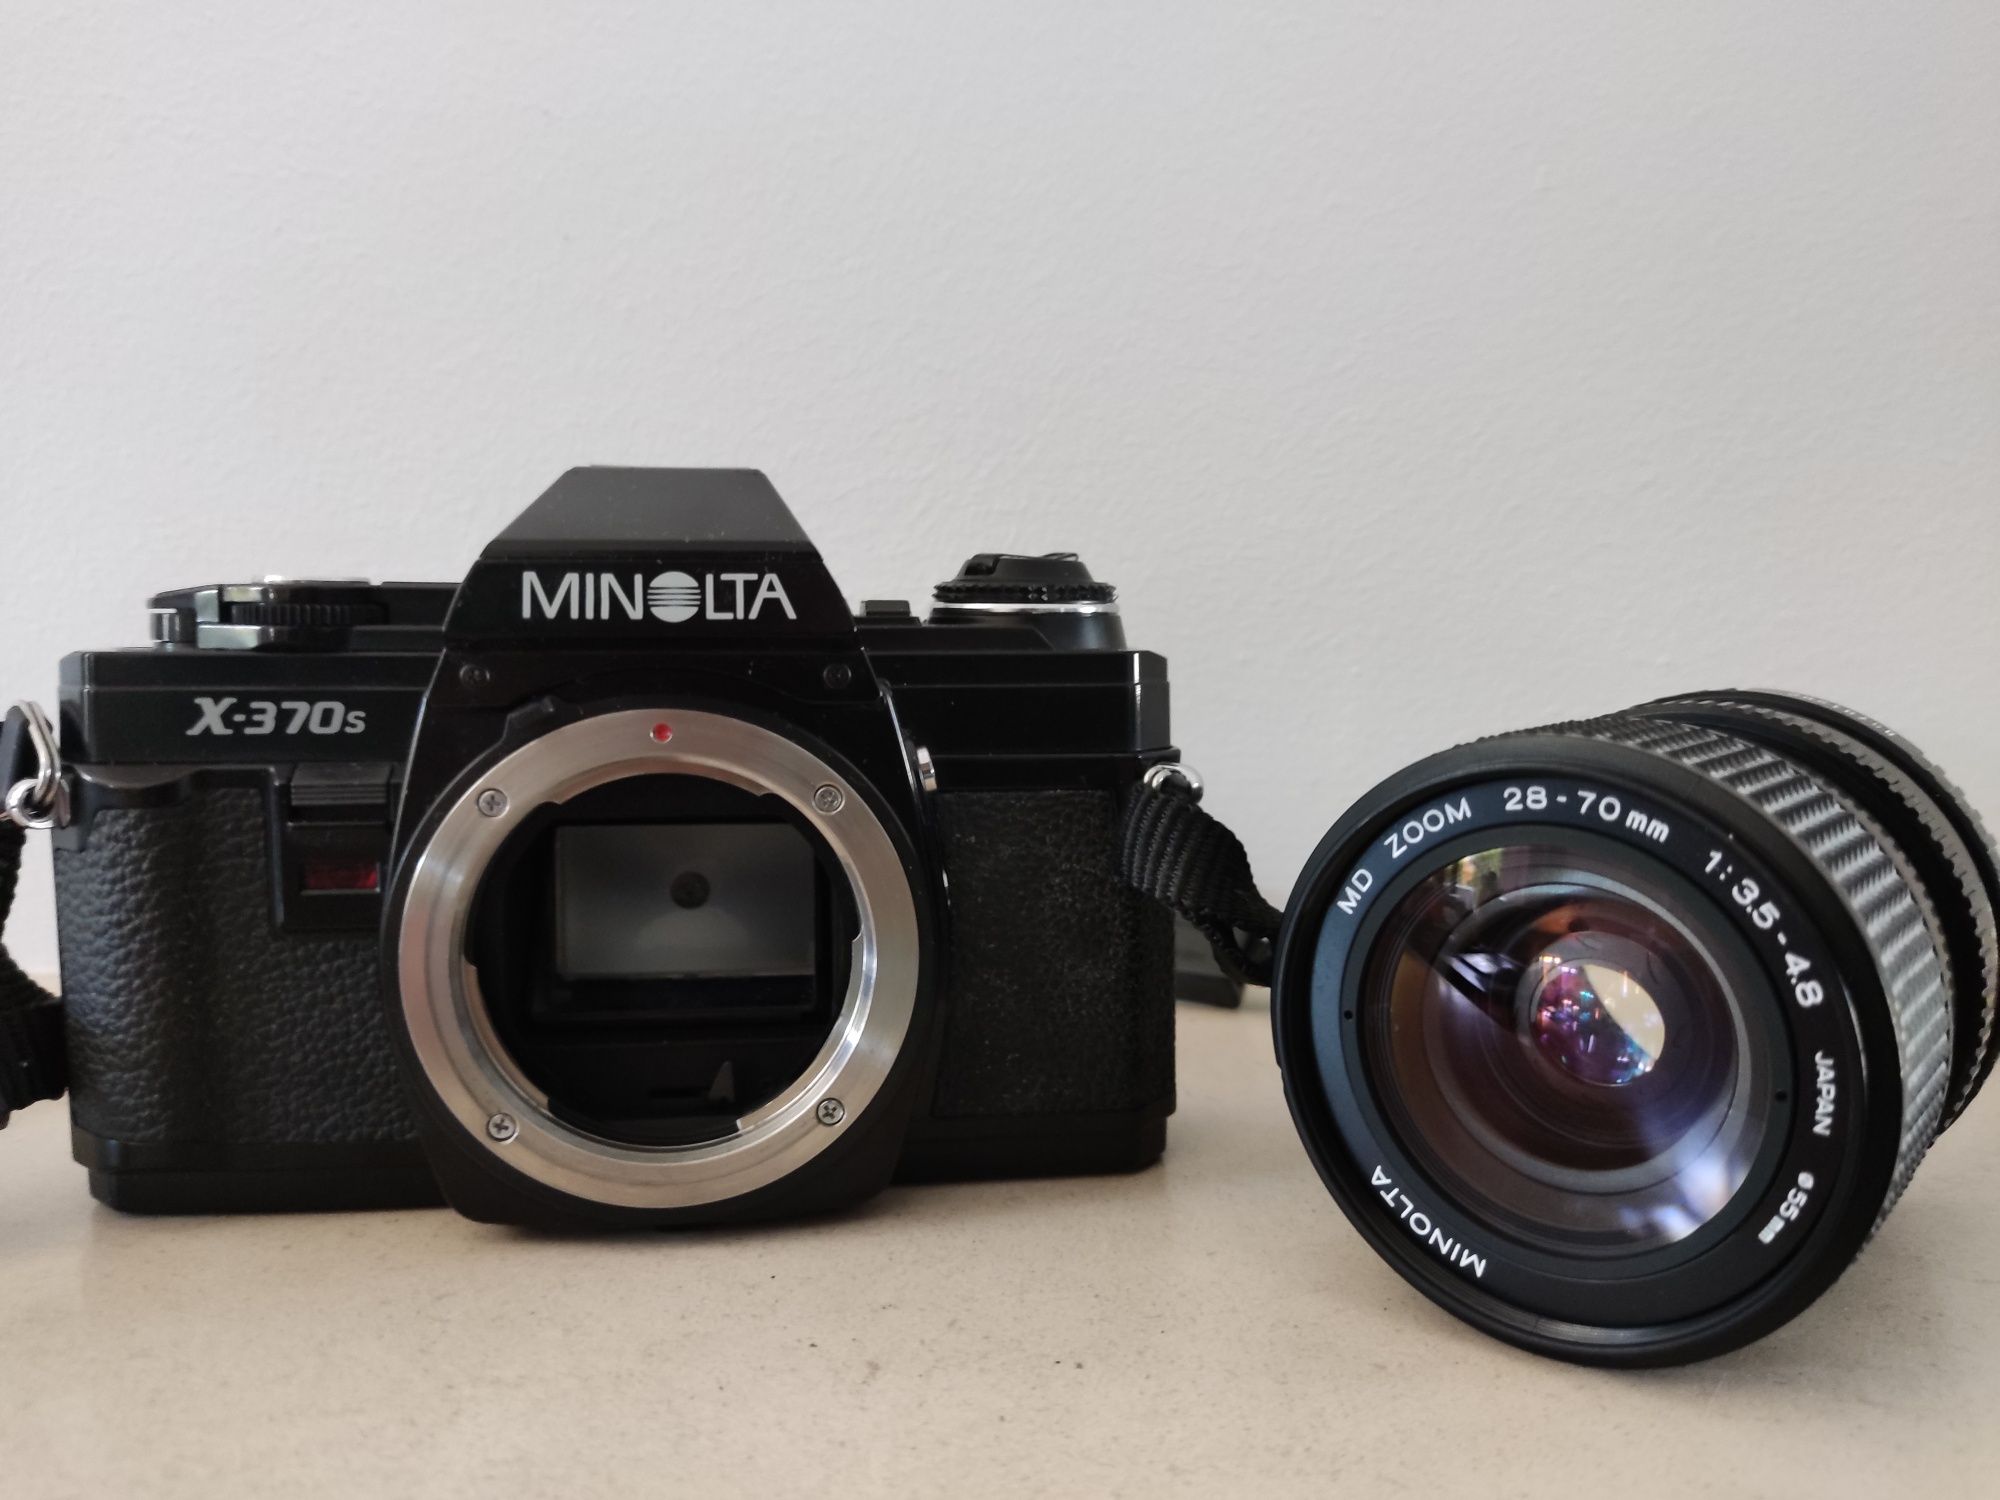 Minolta X-370s + Minolta MD Zoom 28-70mm 1:3.5-4.8